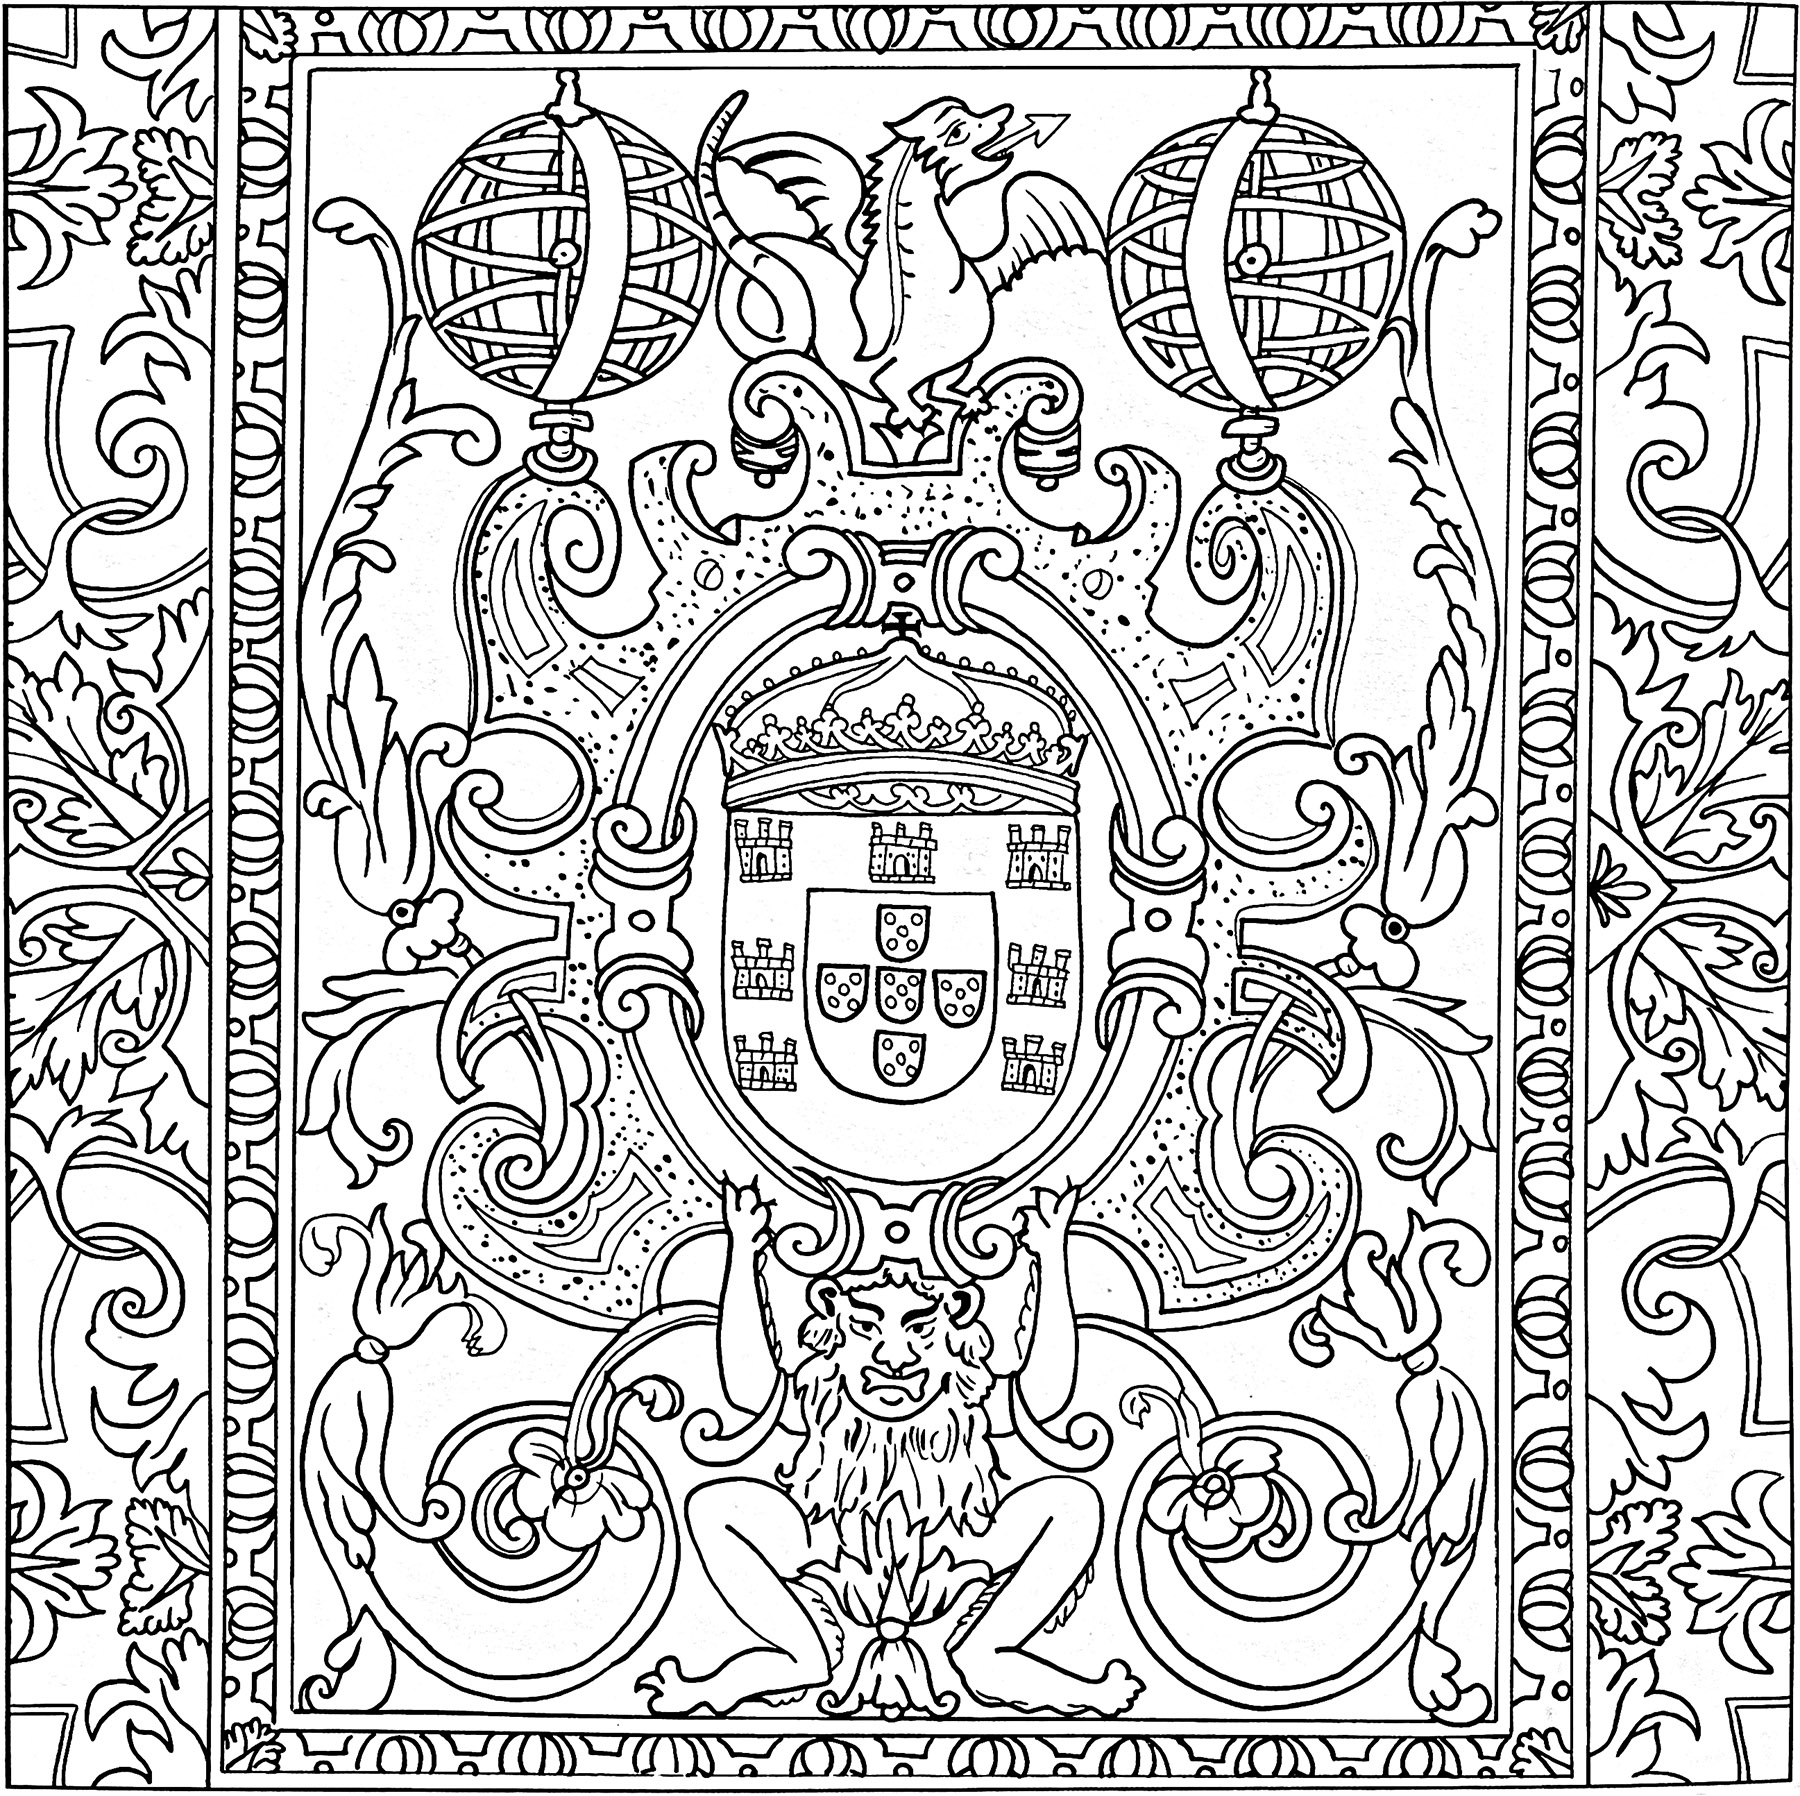 Azulejo aus dem 17. Jahrhundert (Sintra, Portugal). Dieses Kolorit wurde aus einem Azulejo im Pena National Palace in Sintra, Portugal, geschaffen. Es stammt aus dem 17. Jahrhundert.